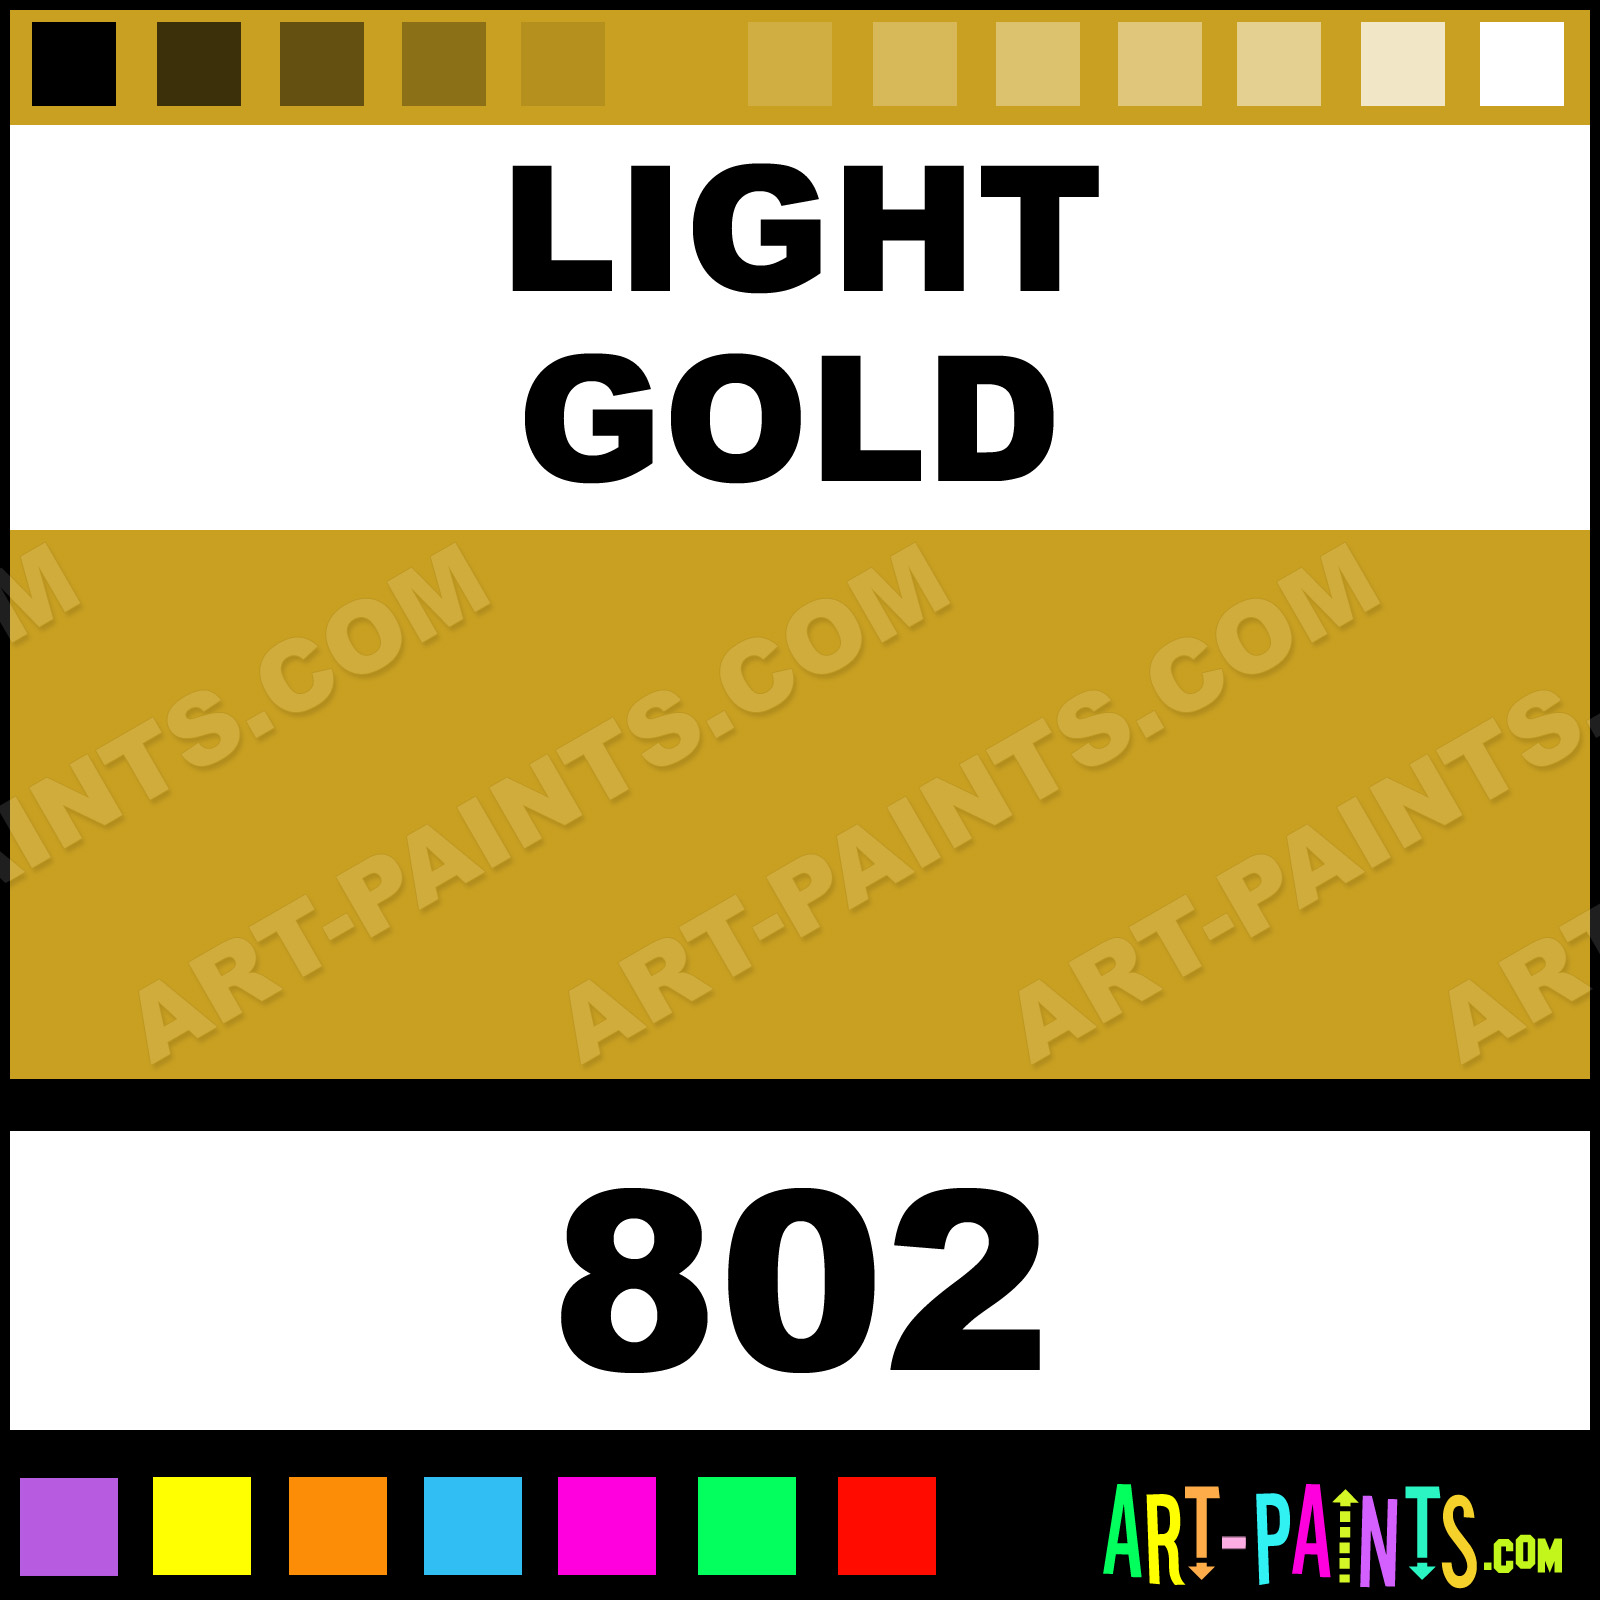 Light Gold Artists Oil Paints - 802 - Light Gold Paint, Light Gold Color, Artists Paint, C9A020 - Art-Paints.com